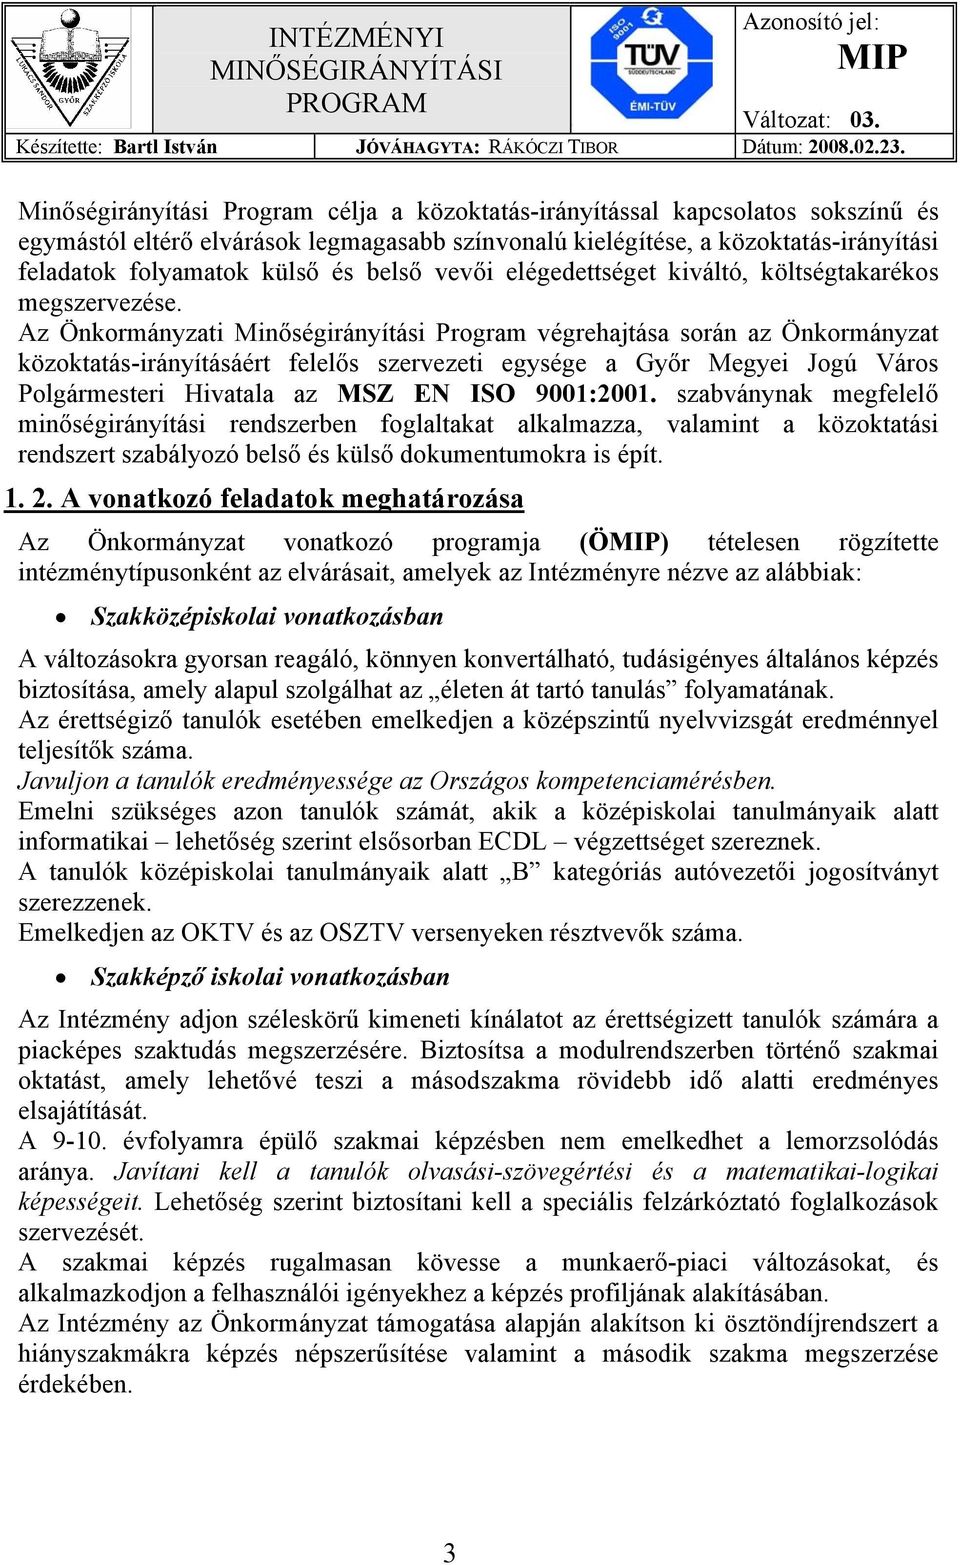 Az Önkormányzati Minőségirányítási Program végrehajtása során az Önkormányzat közoktatás-irányításáért felelős szervezeti egysége a Győr Megyei Jogú Város Polgármesteri Hivatala az MSZ EN ISO